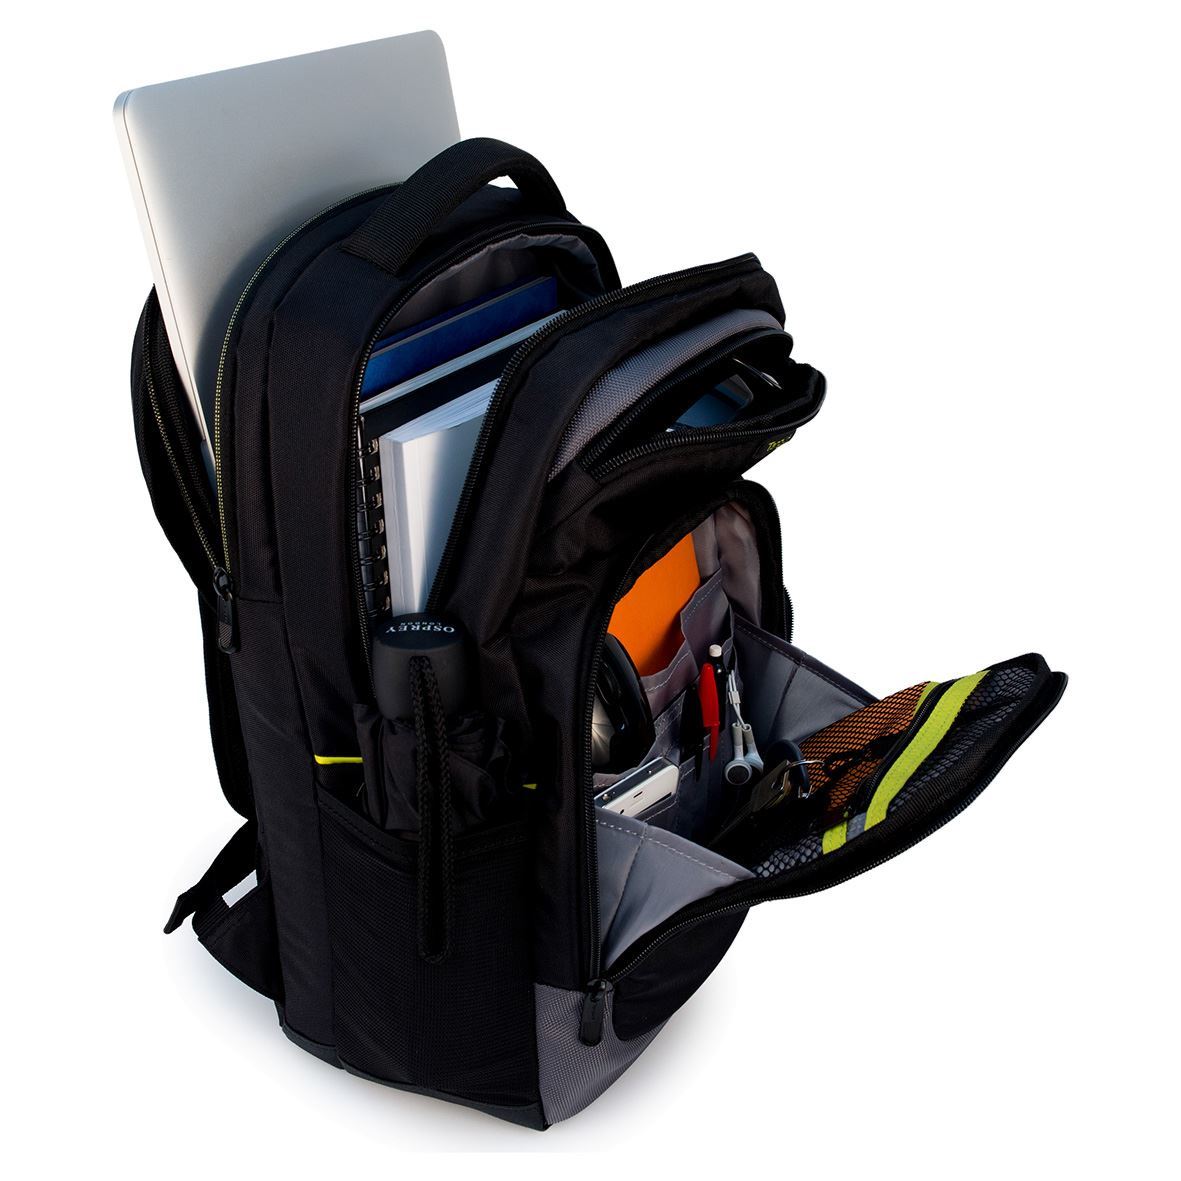 Ik was mijn kleren Makkelijk te lezen Doordringen CityGear 15.6" Laptop Backpack - Black